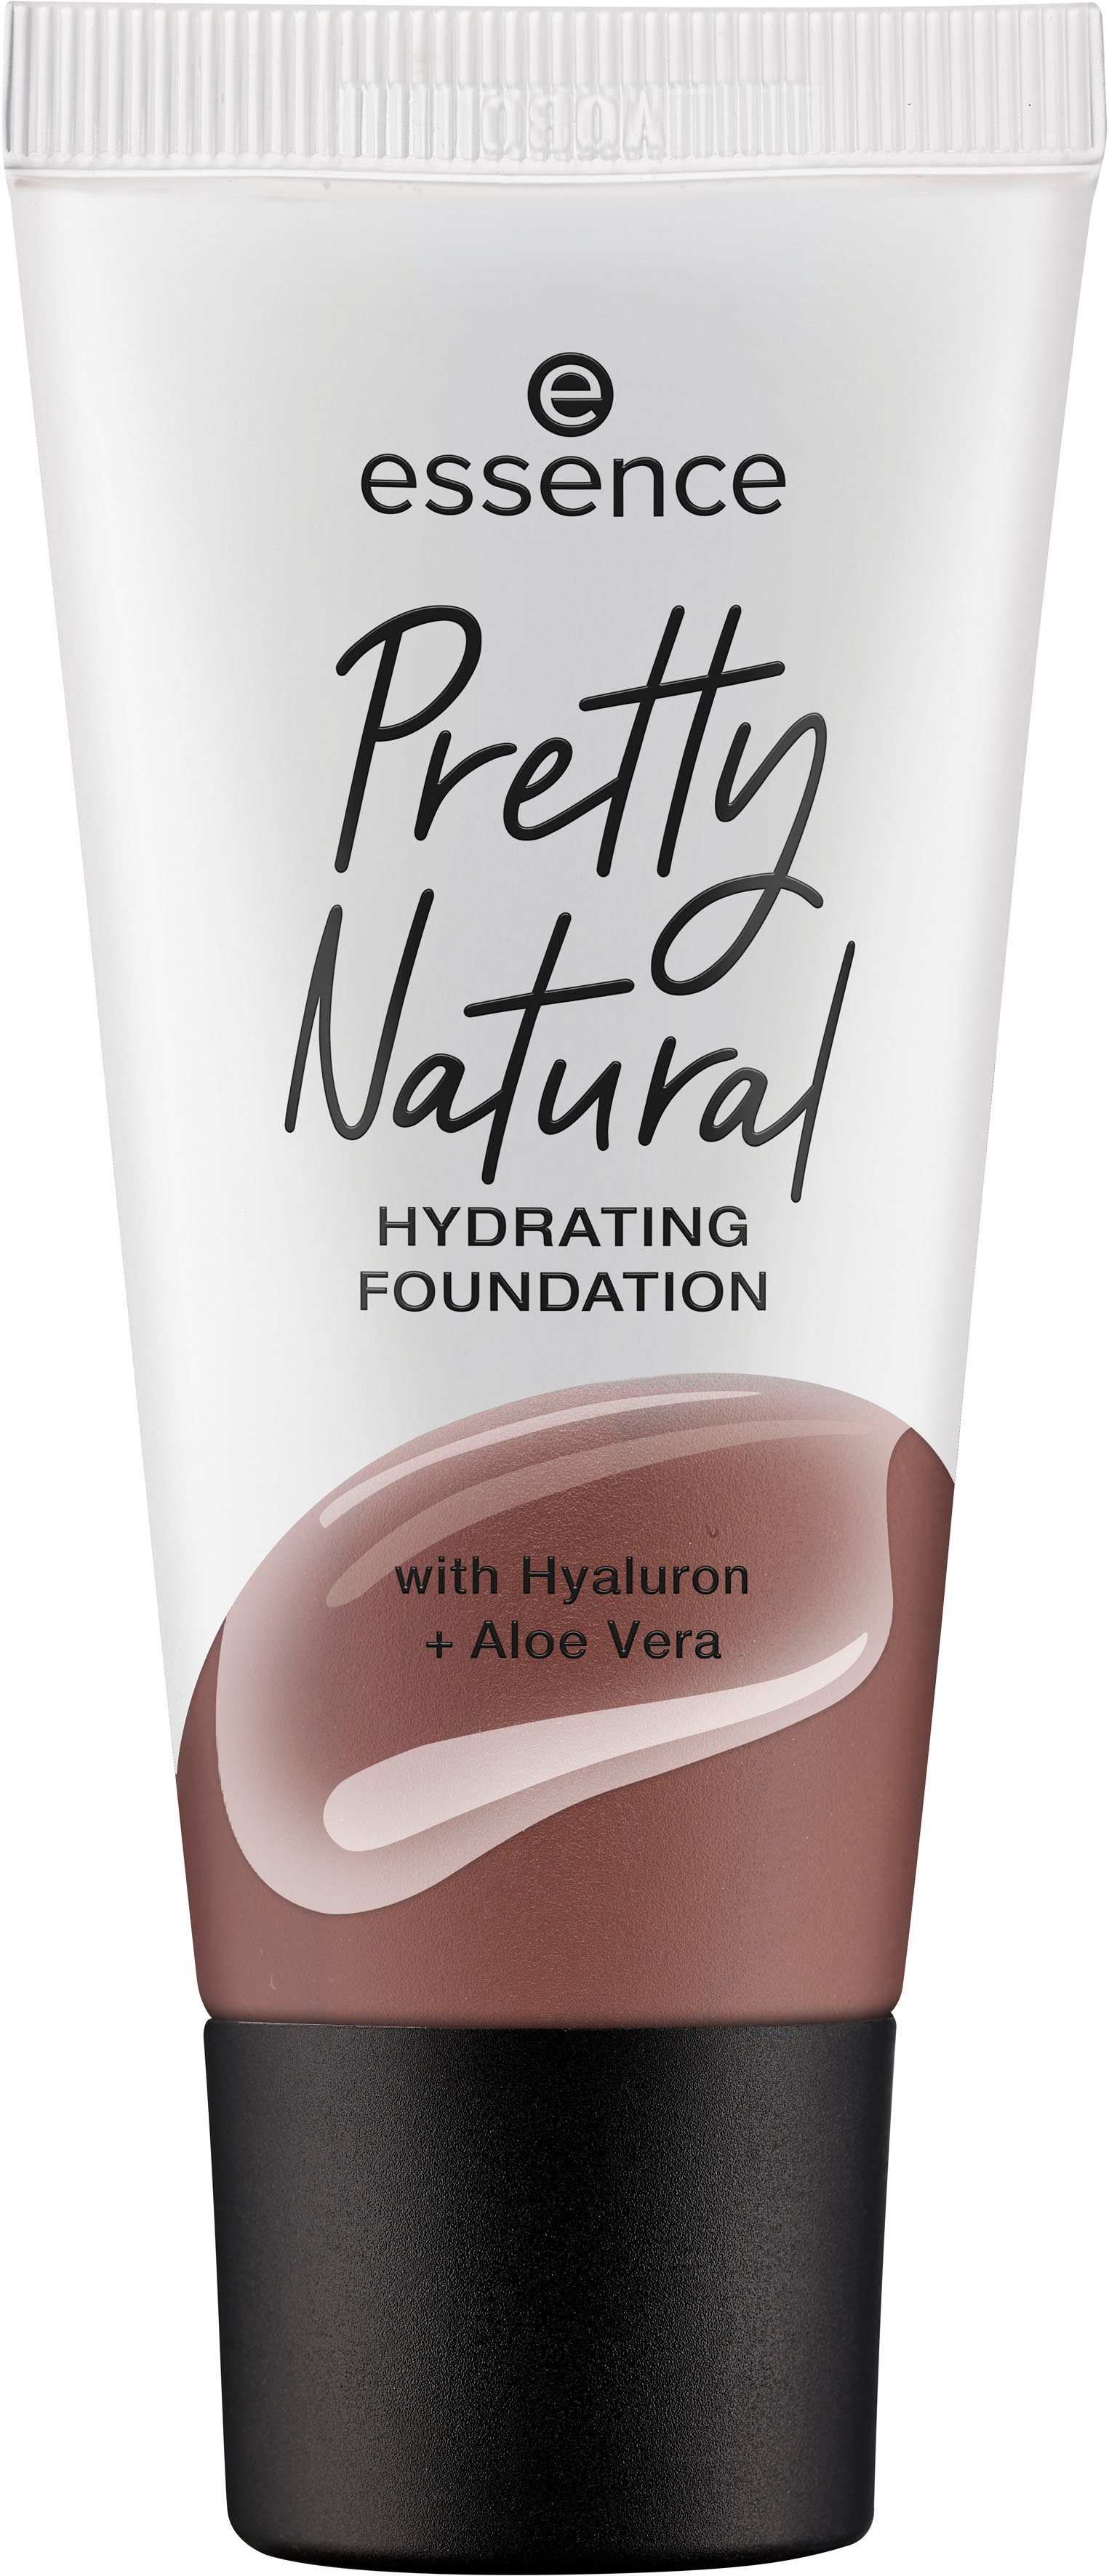 Pretty Mocha Neutral 3-tlg. Foundation Essence Natural HYDRATING,